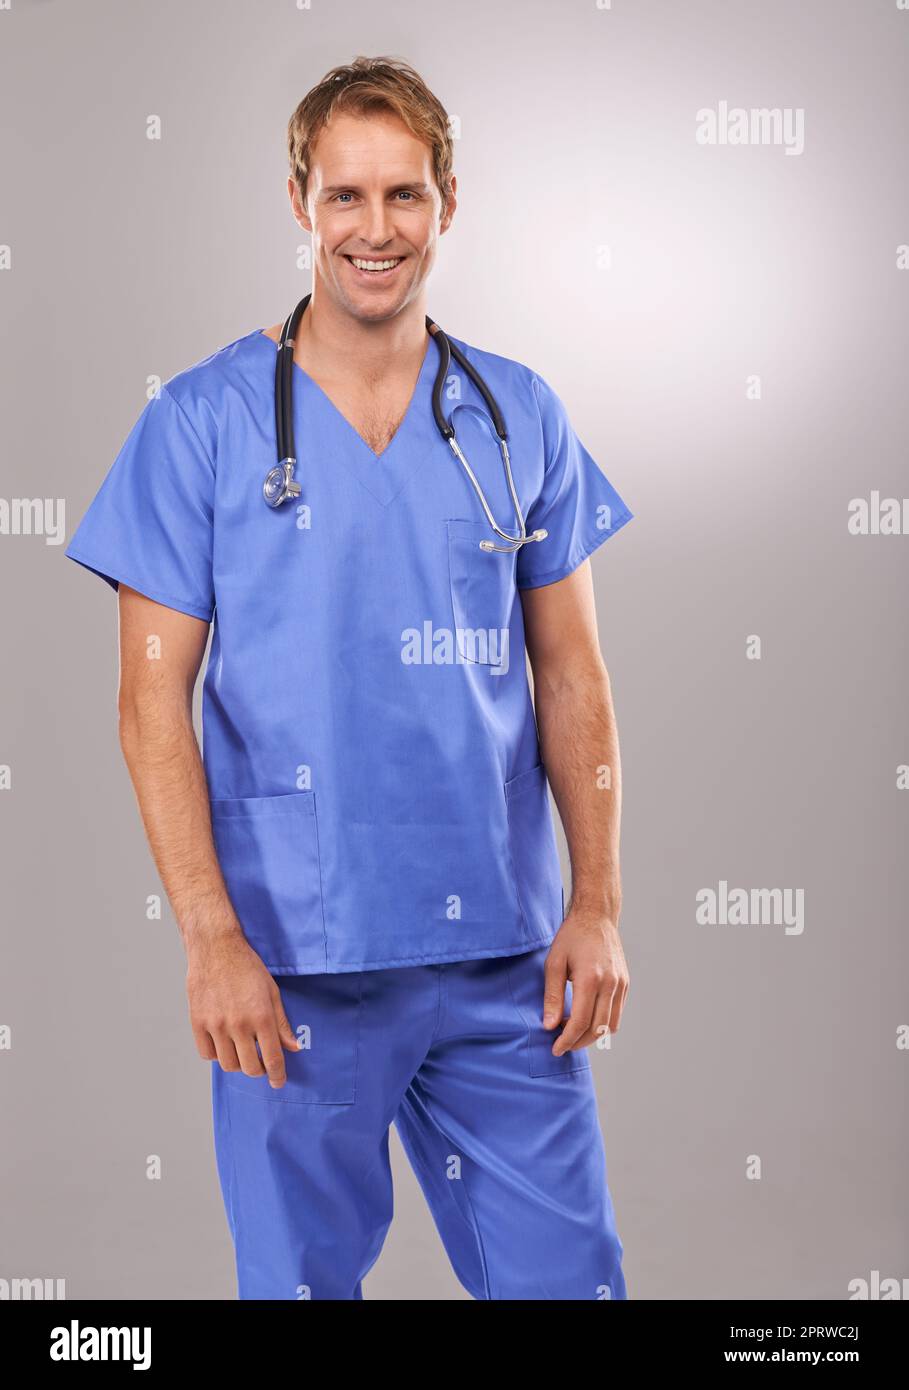 Er verfügt über hervorragende Operationsfähigkeiten. Studioporträt eines hübschen Arztes, der vor einem grauen Hintergrund steht. Stockfoto